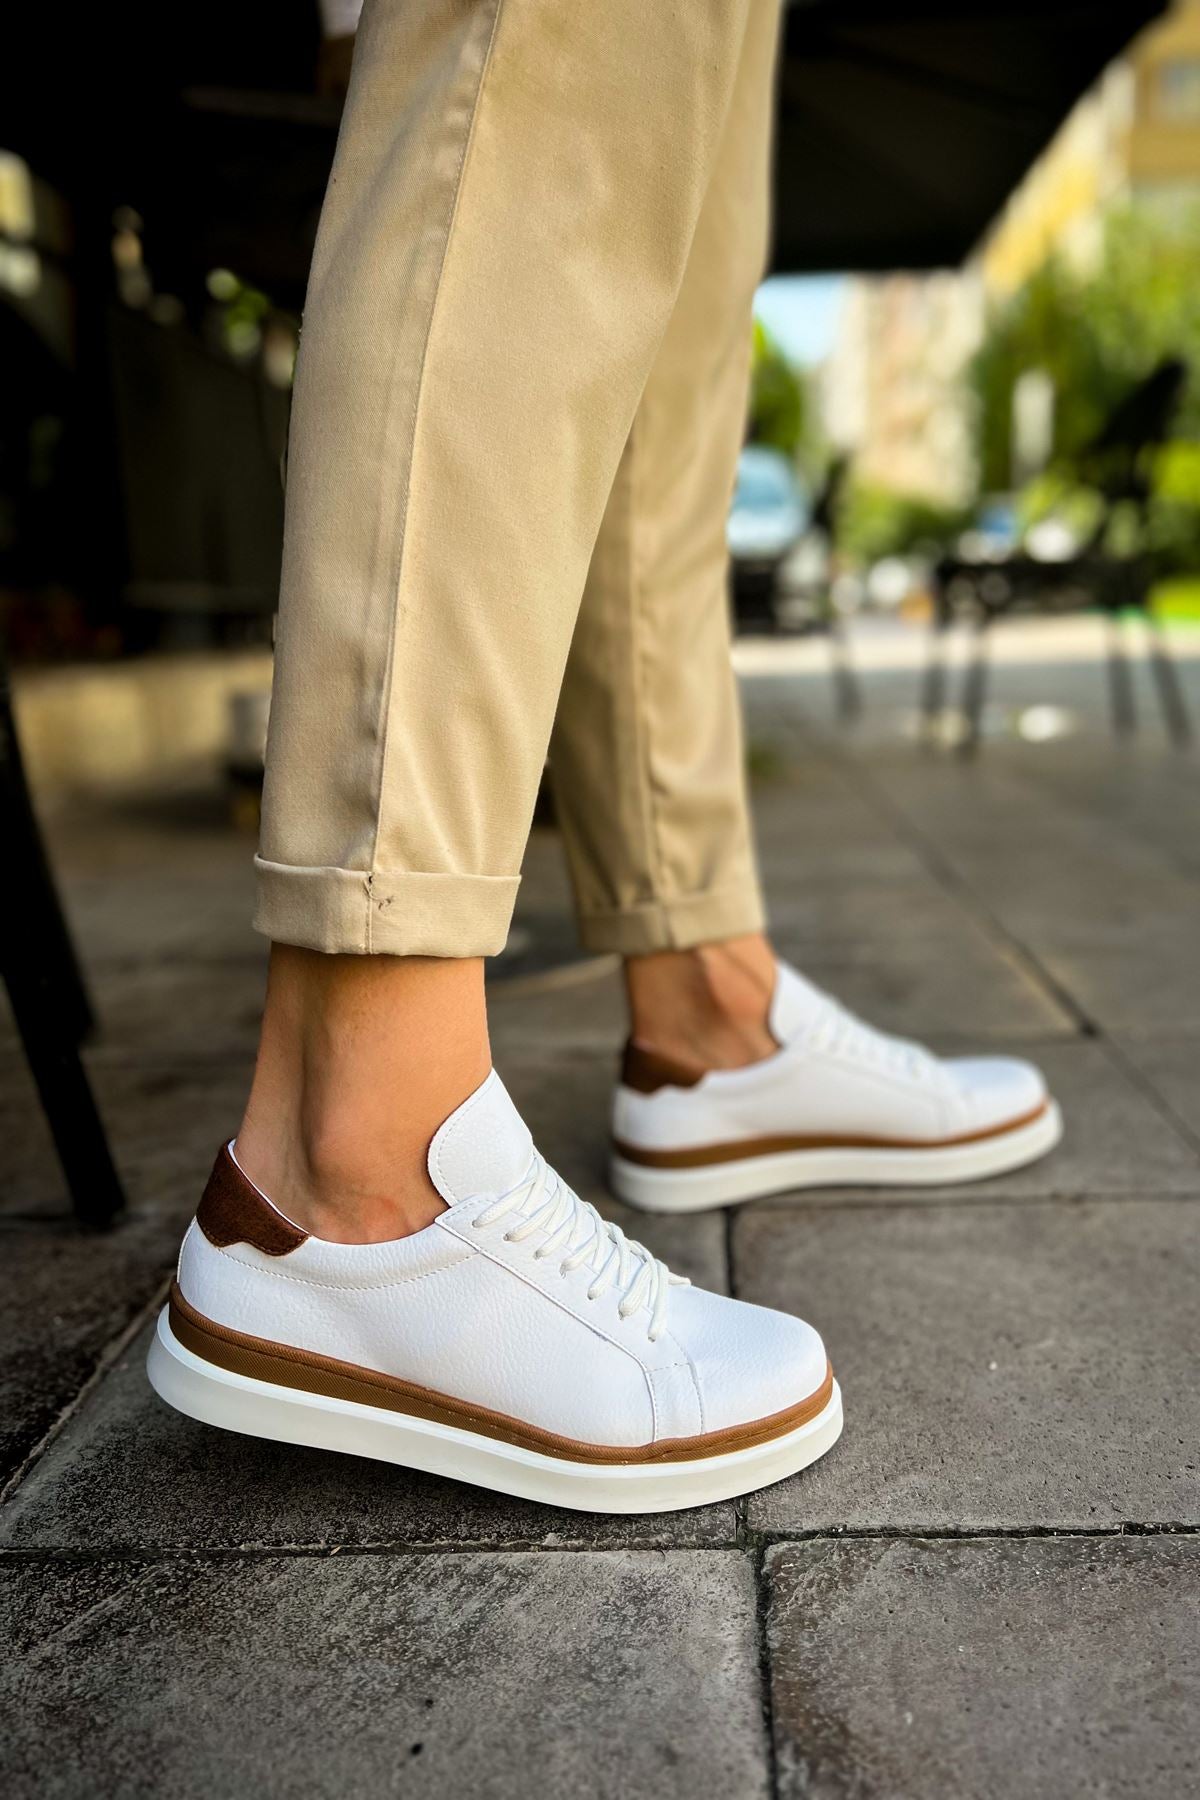 CH979 Santoni GBT Sport Men's Sneakers Shoes WHITE/TAGAN - STREETMODE ™